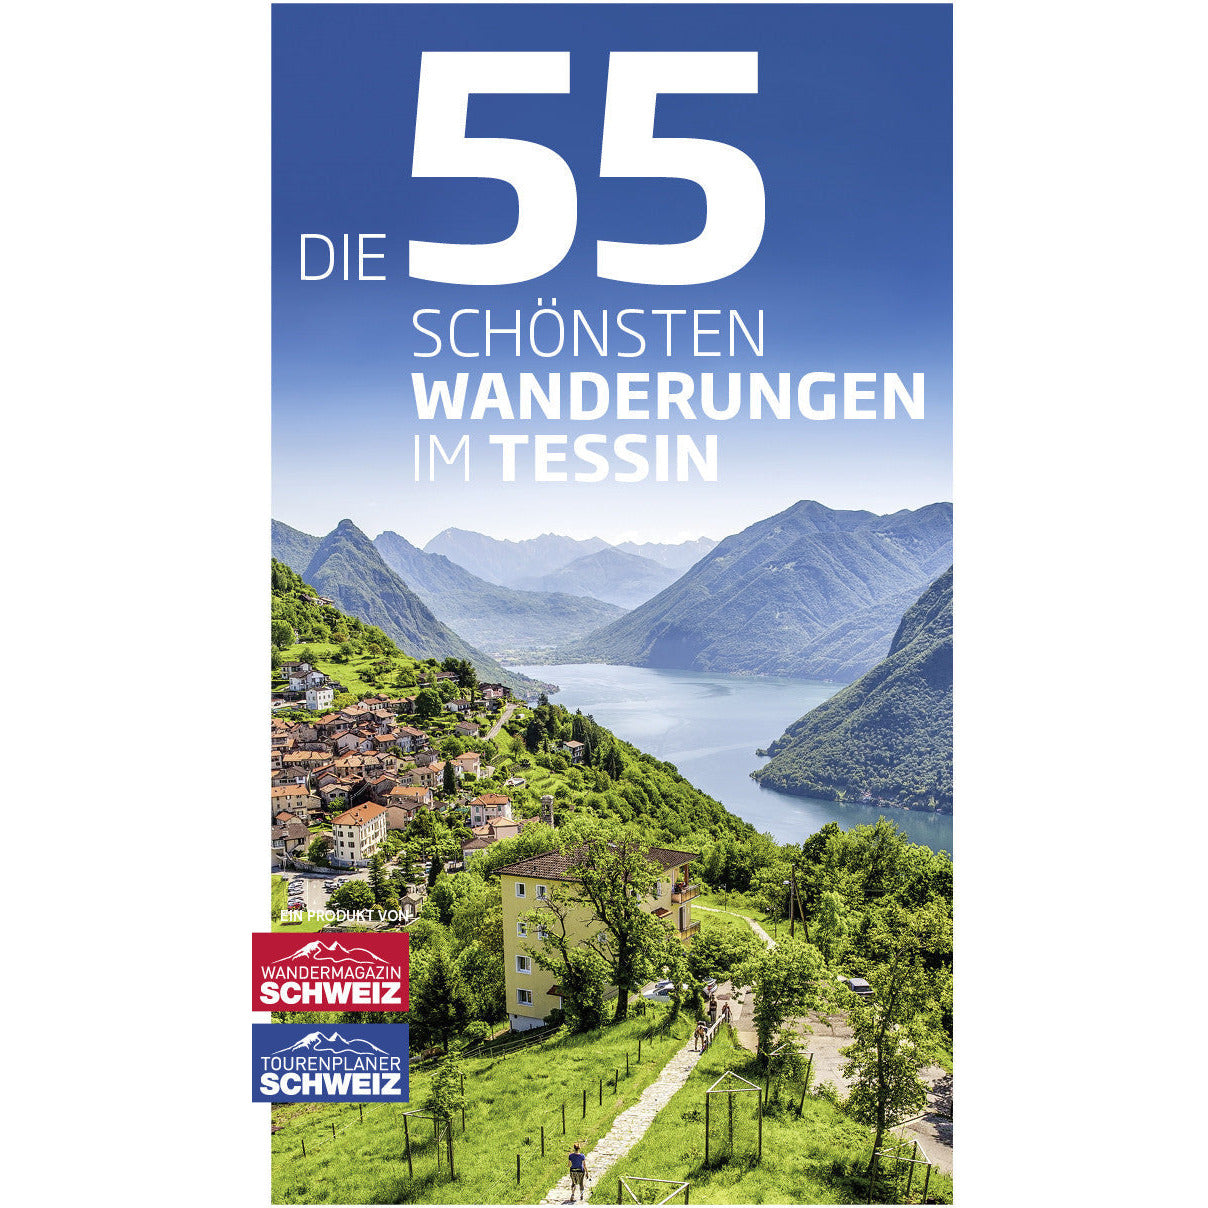 Die 55 schönsten Wanderungen im Tessin Wandershop Schweiz 